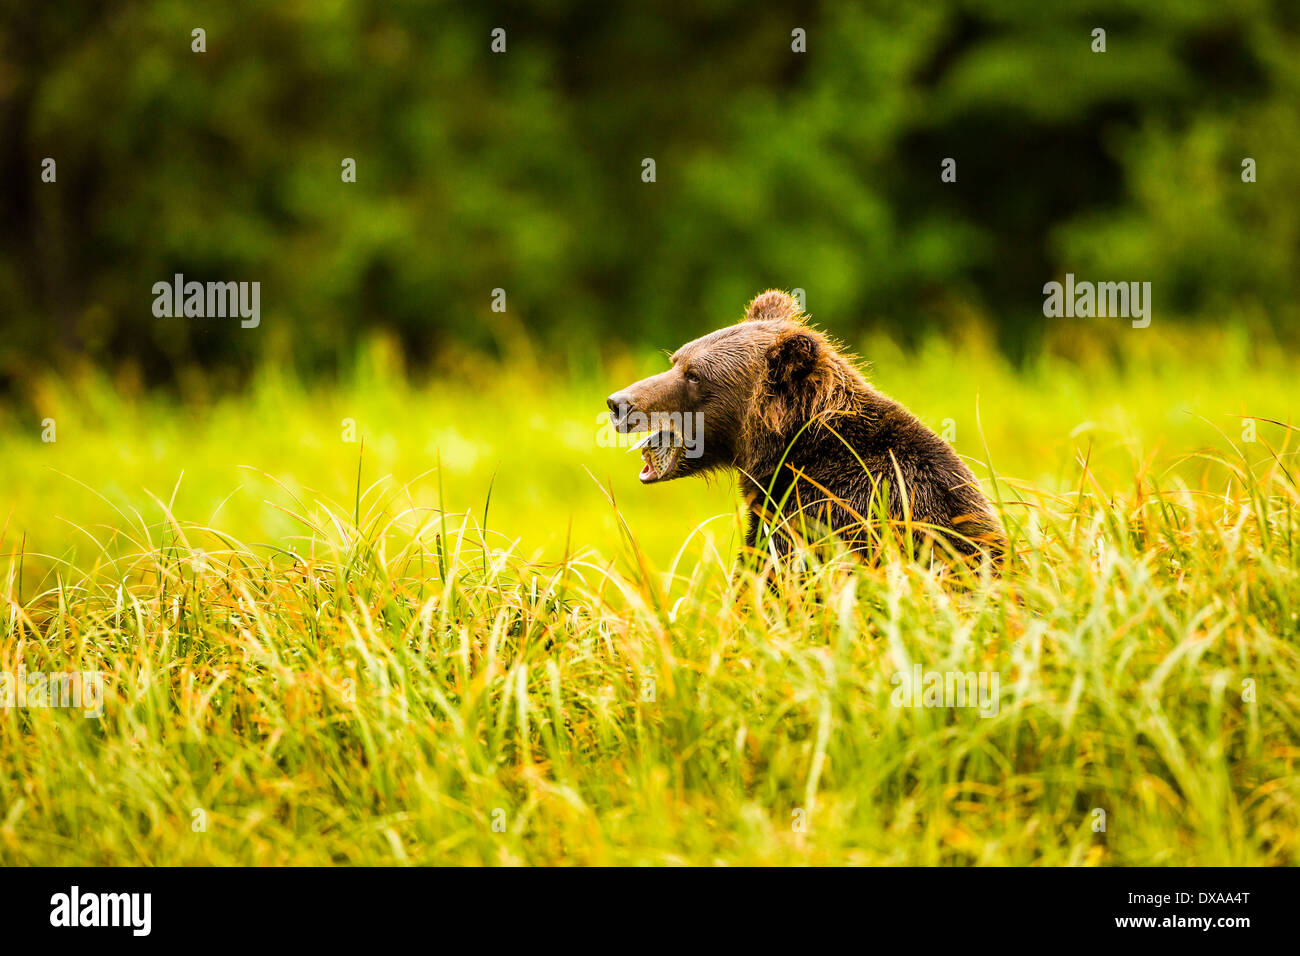 Una femmina di orso grizzly gode la coda del suo pranzo di salmone in ingresso Khutzeymateen in BC, Canada Foto Stock